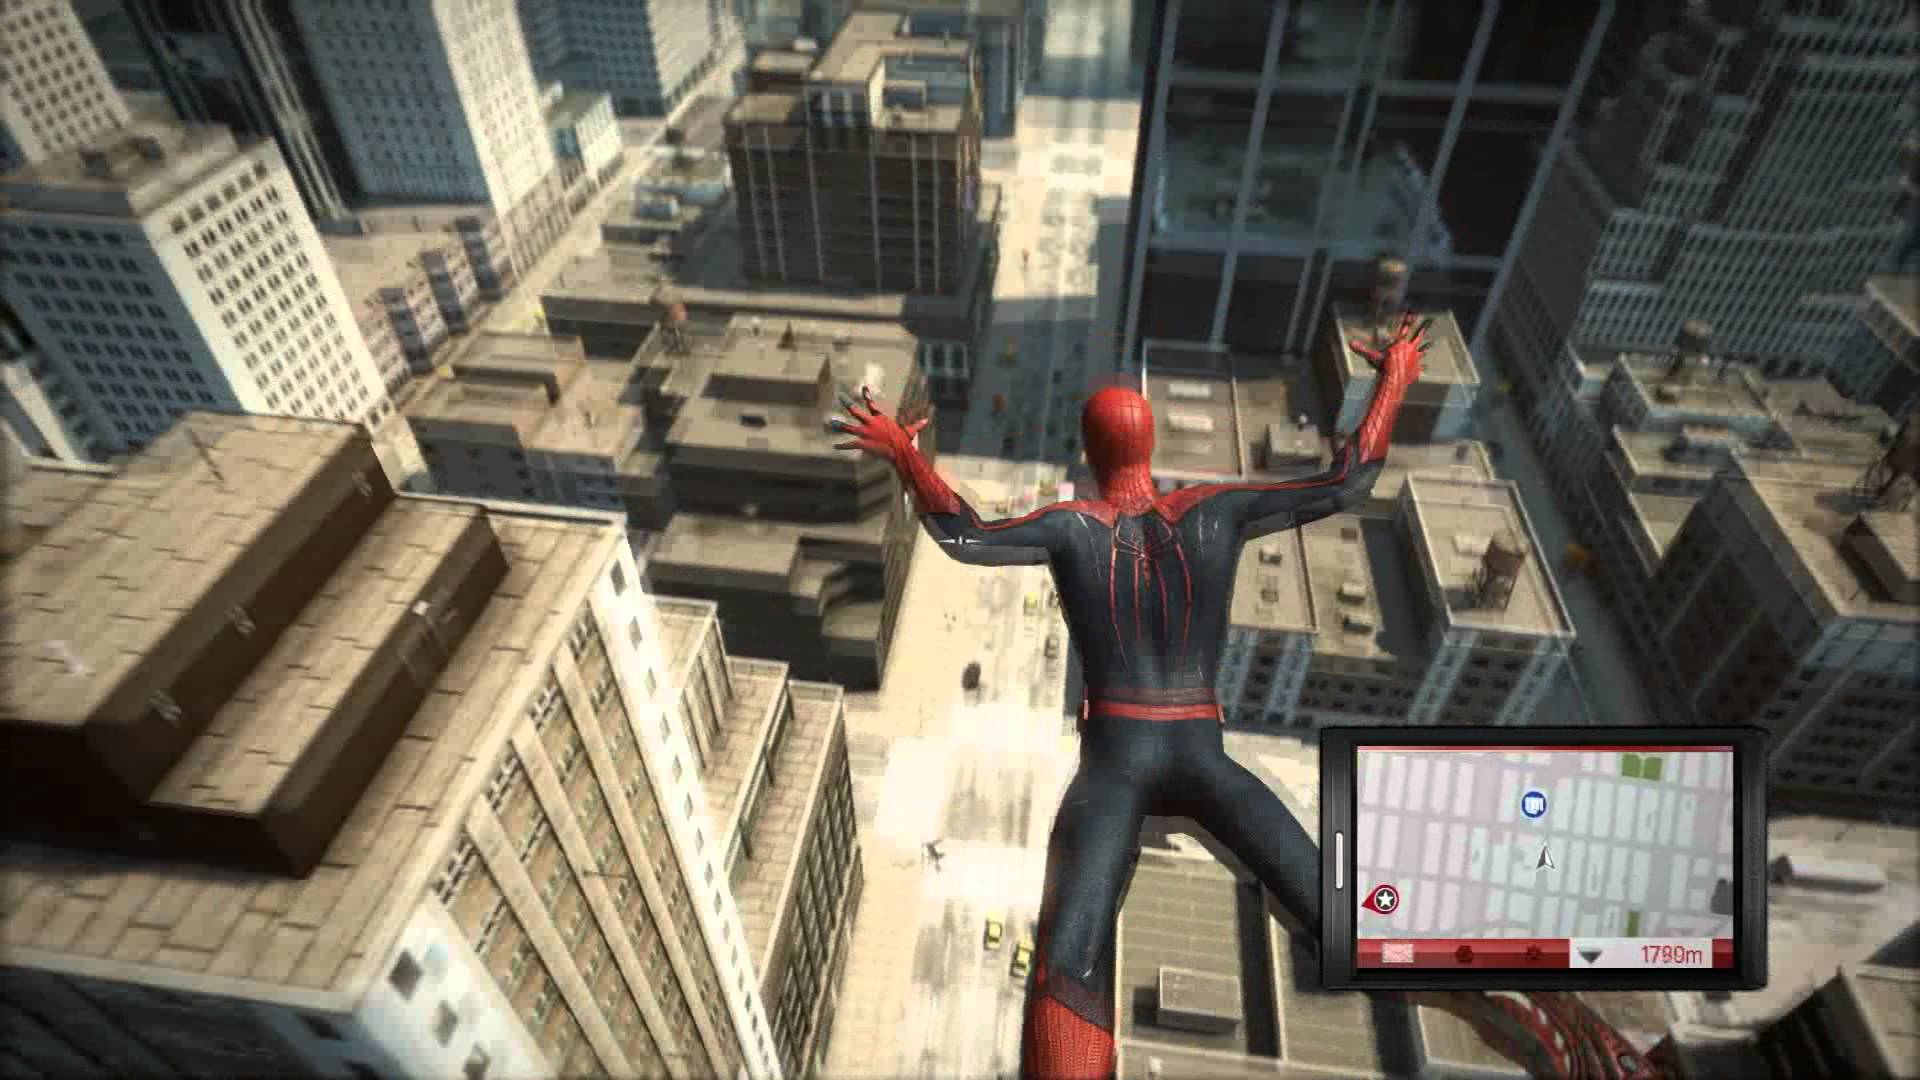 Игры 2018 системный. The amazing Spider-man игра геймплей. The amazing Spider man 1 игра геймплей. The amazing Spider man 2 игра геймплей. The amazing Spider-man 2 геймплей.